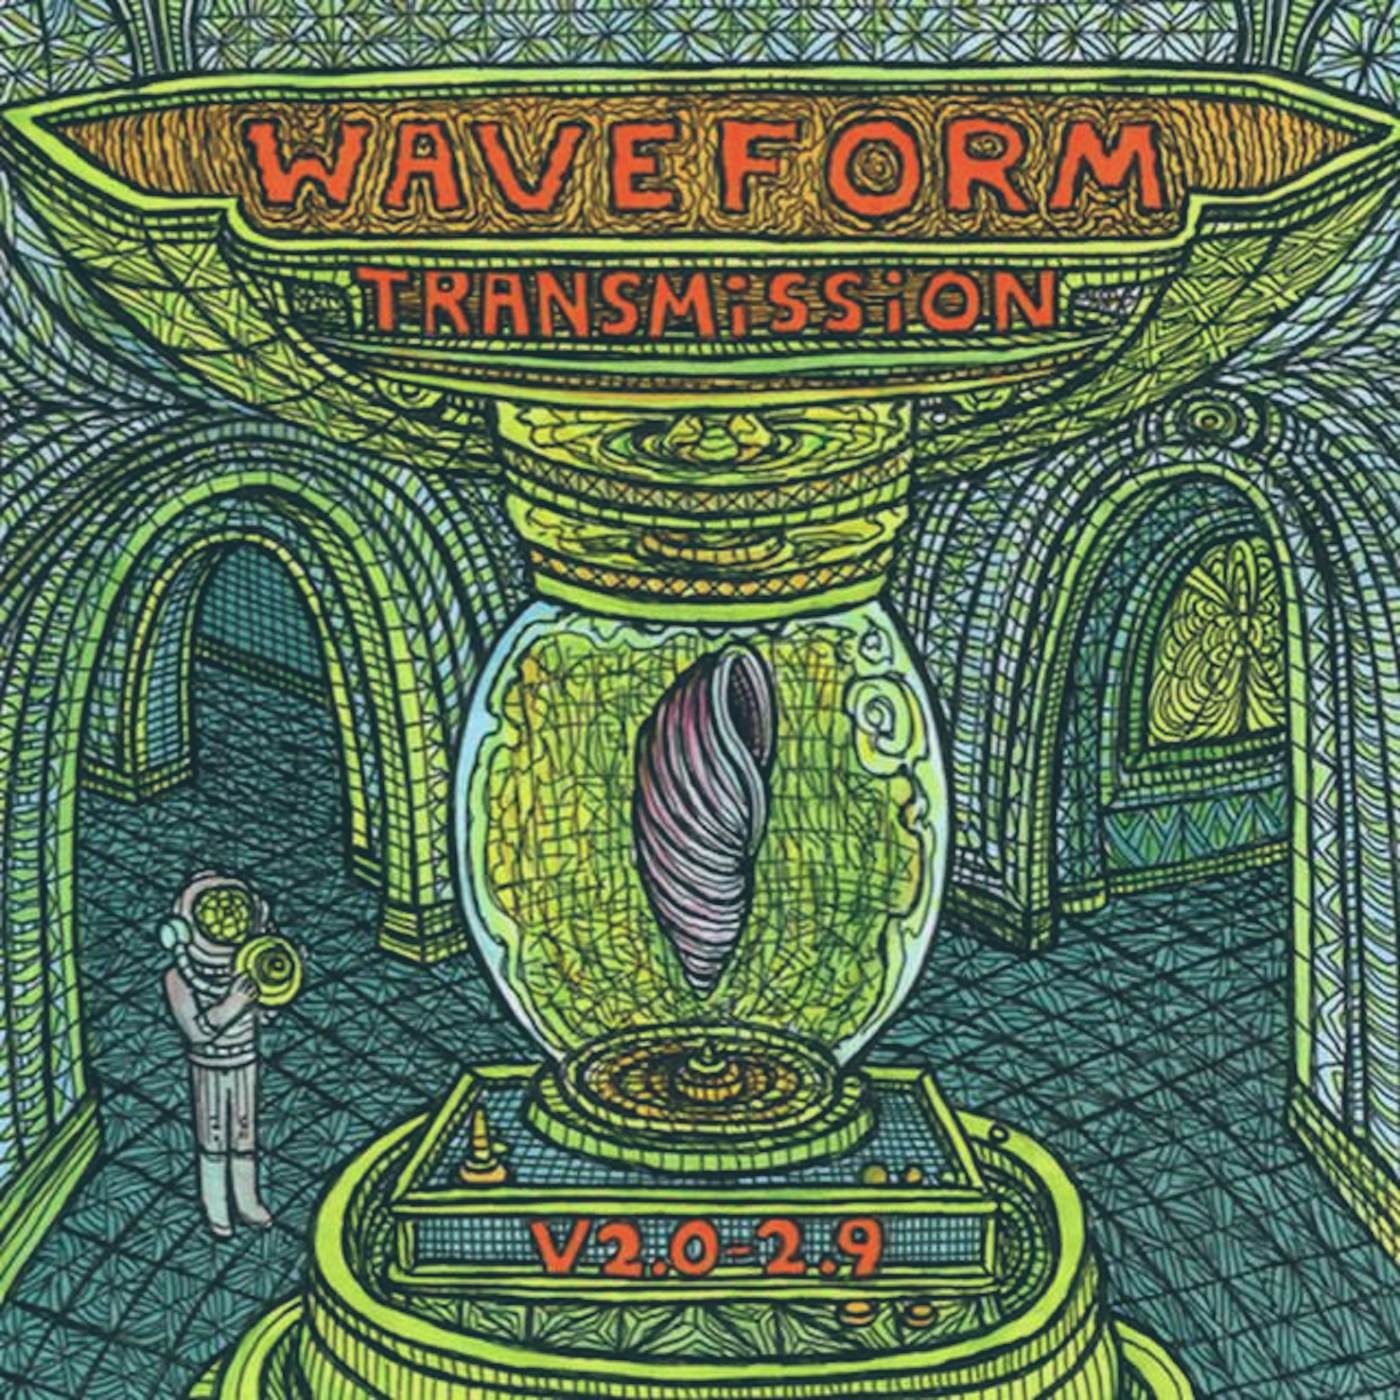 Waveform Transmission